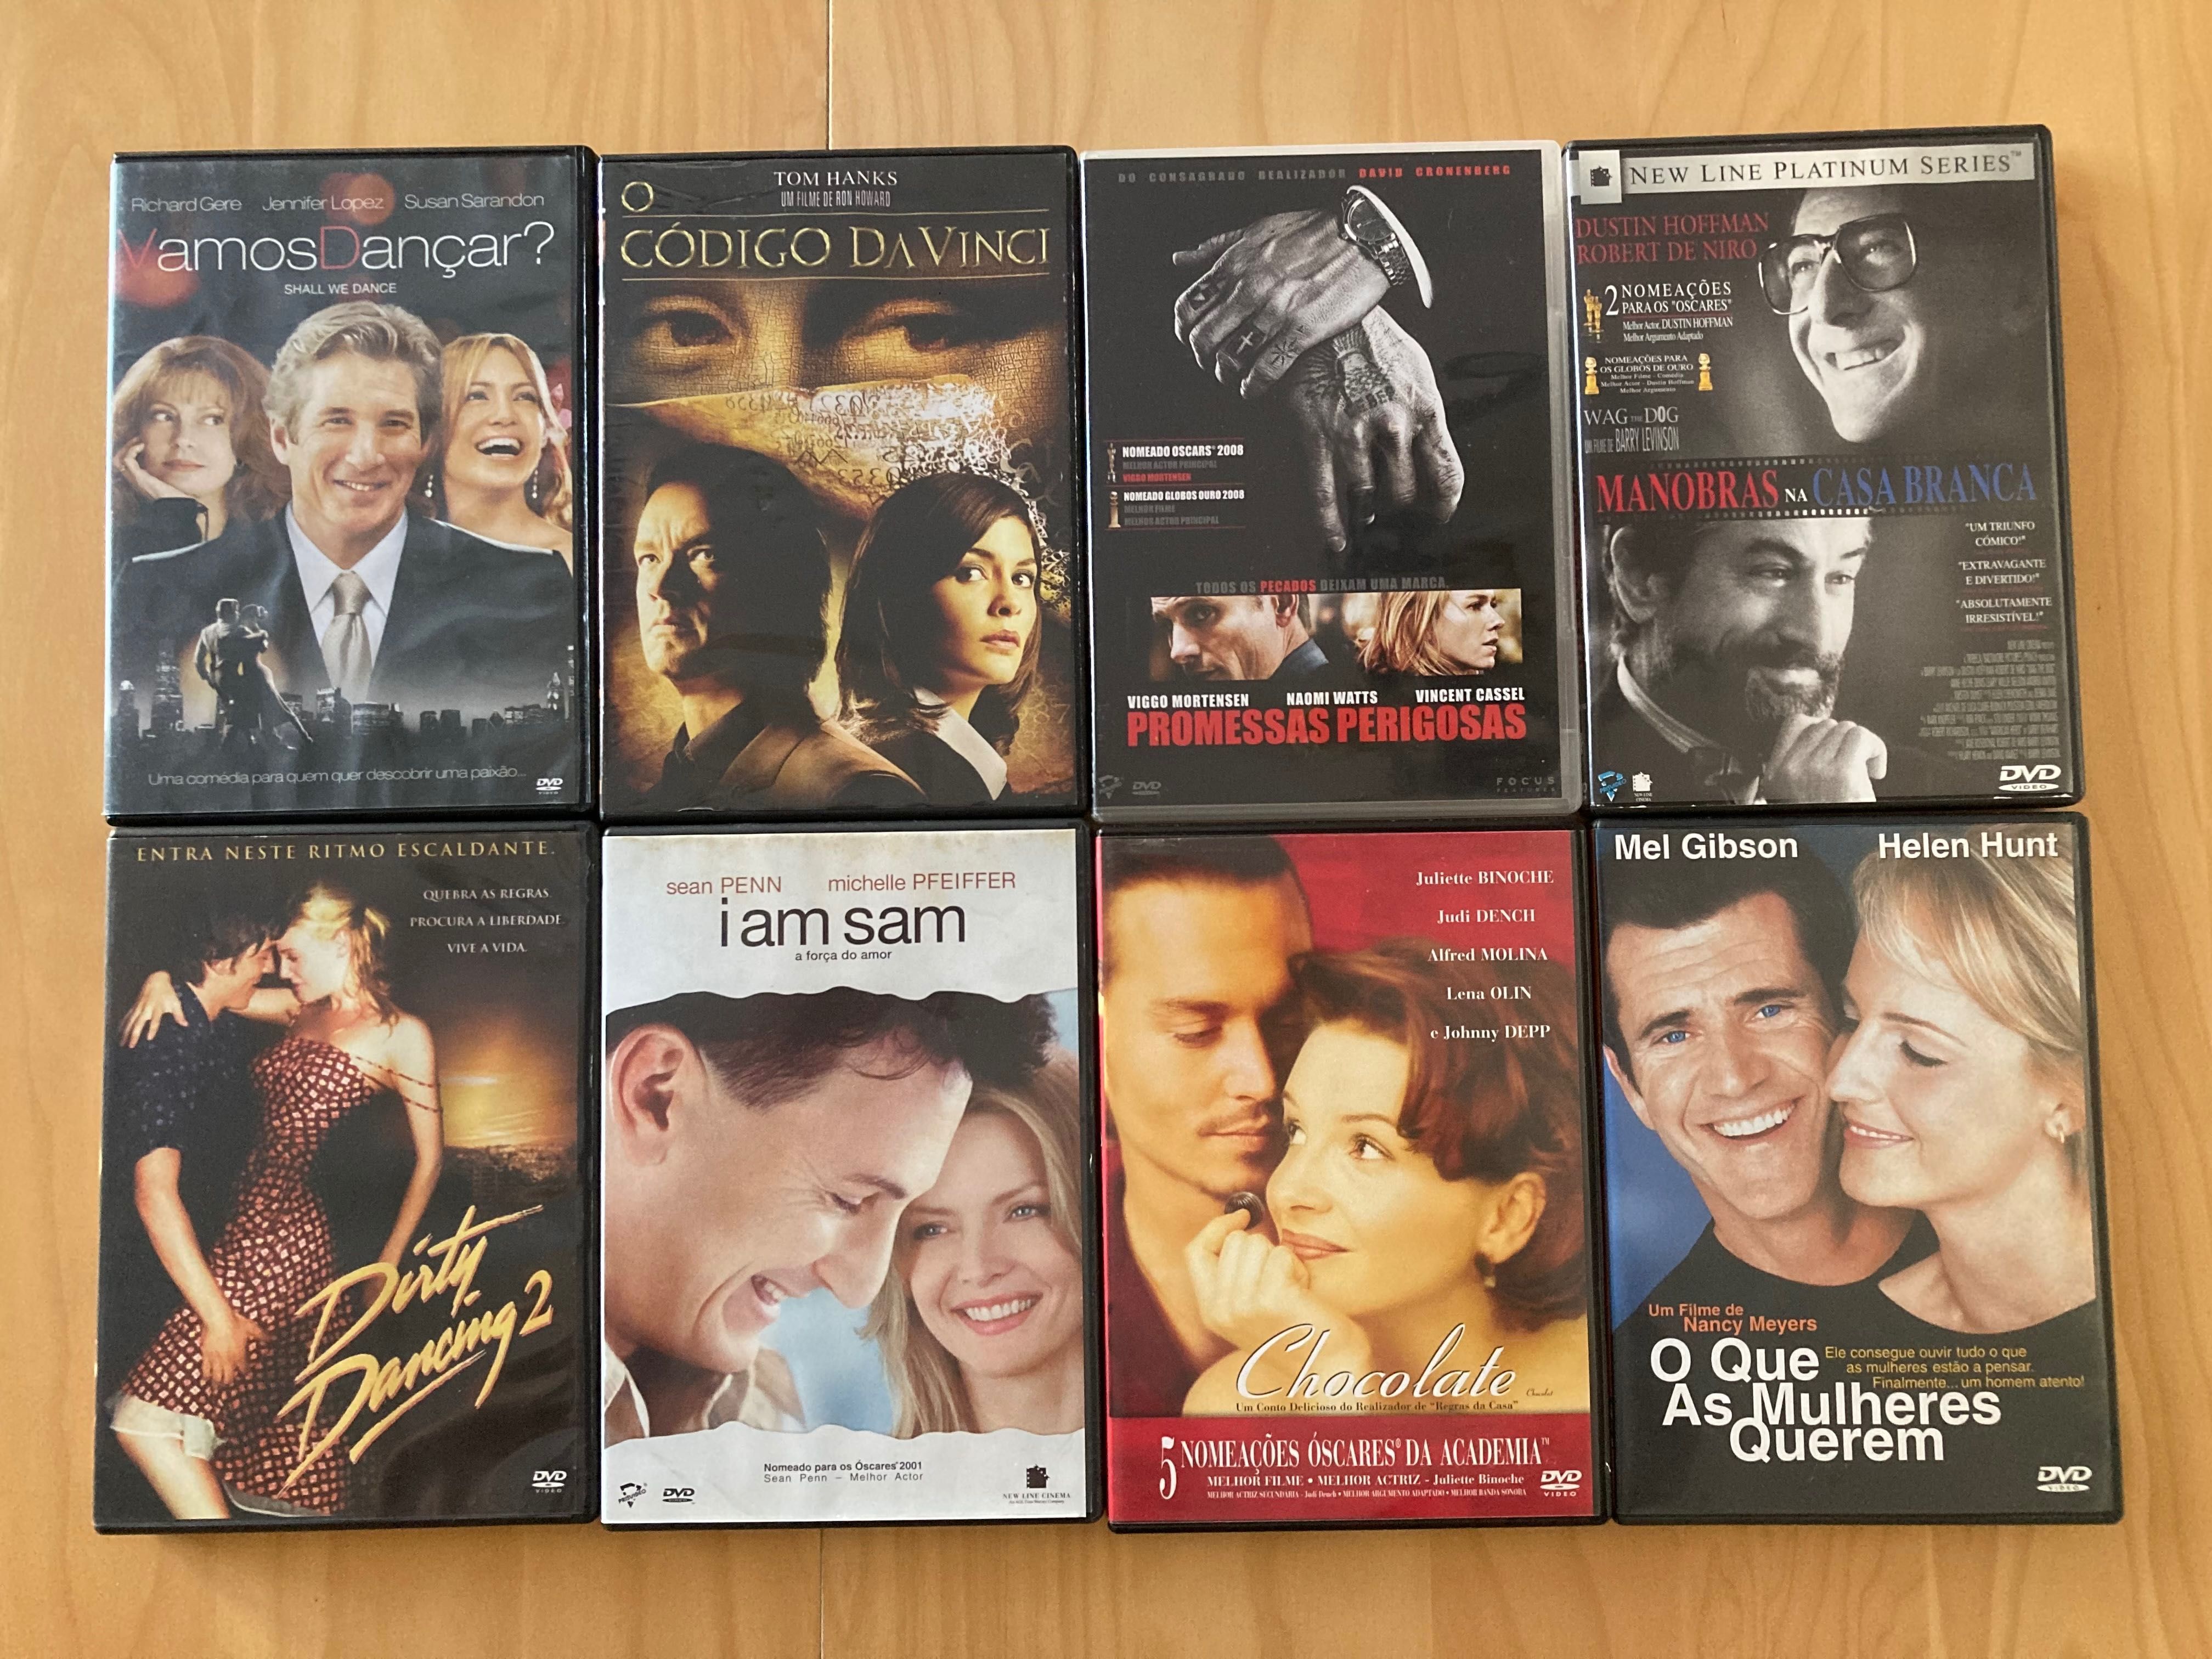 DVD’s originais para venda - diversos géneros